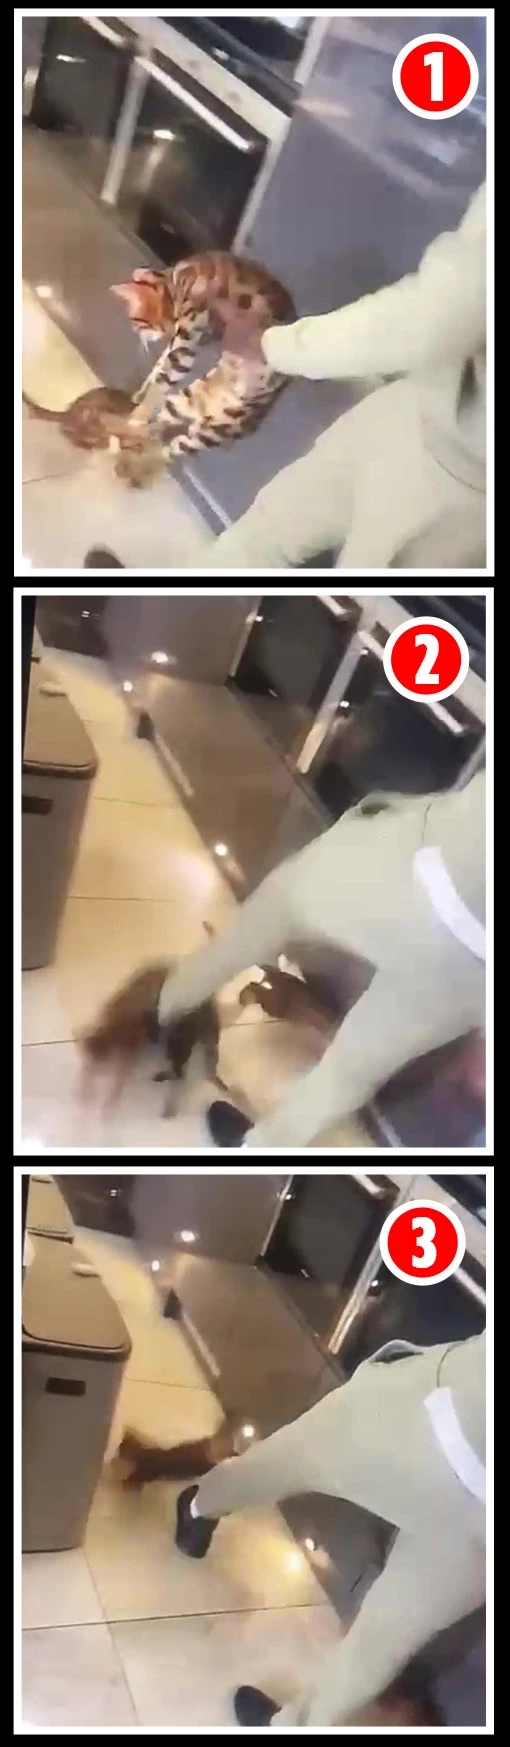 Watch disturbing video of West Ham/France footballer Kurt Zouma assaulting his pet cat at home (video)